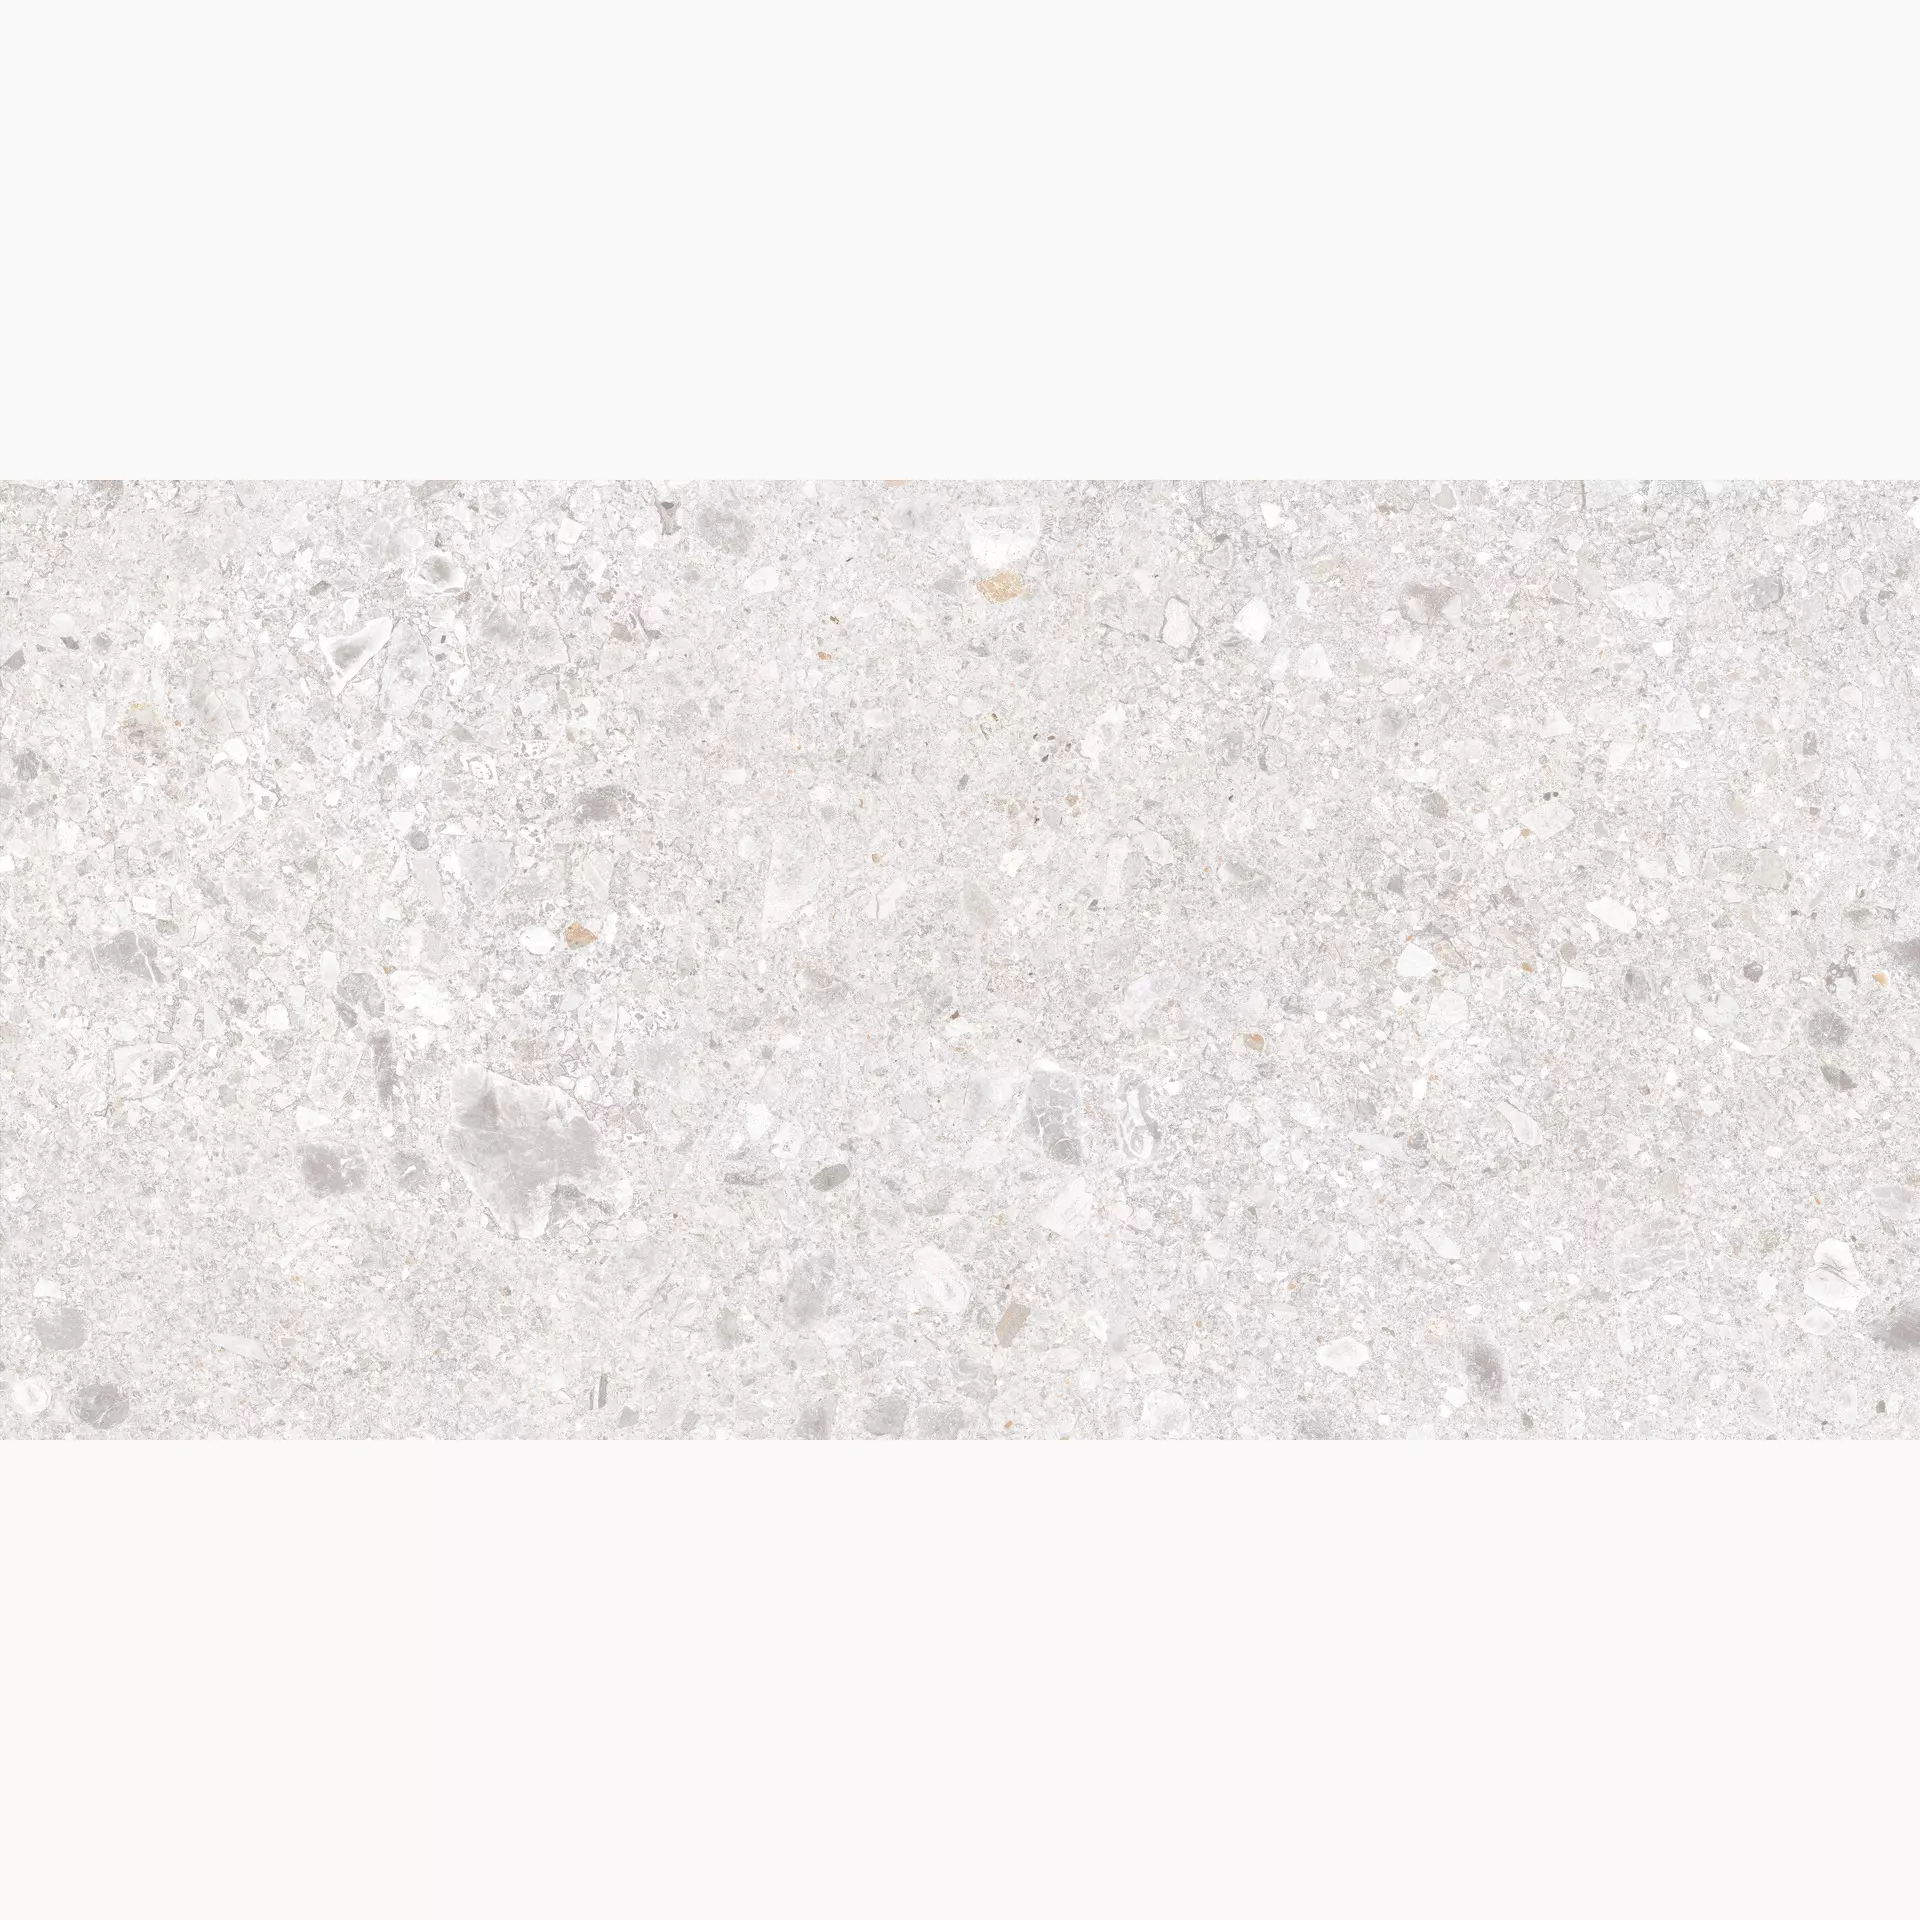 Marazzi Mystone Ceppo Di Gre White Naturale – Matt White MFW6 matt natur 60x120cm rektifiziert 10mm